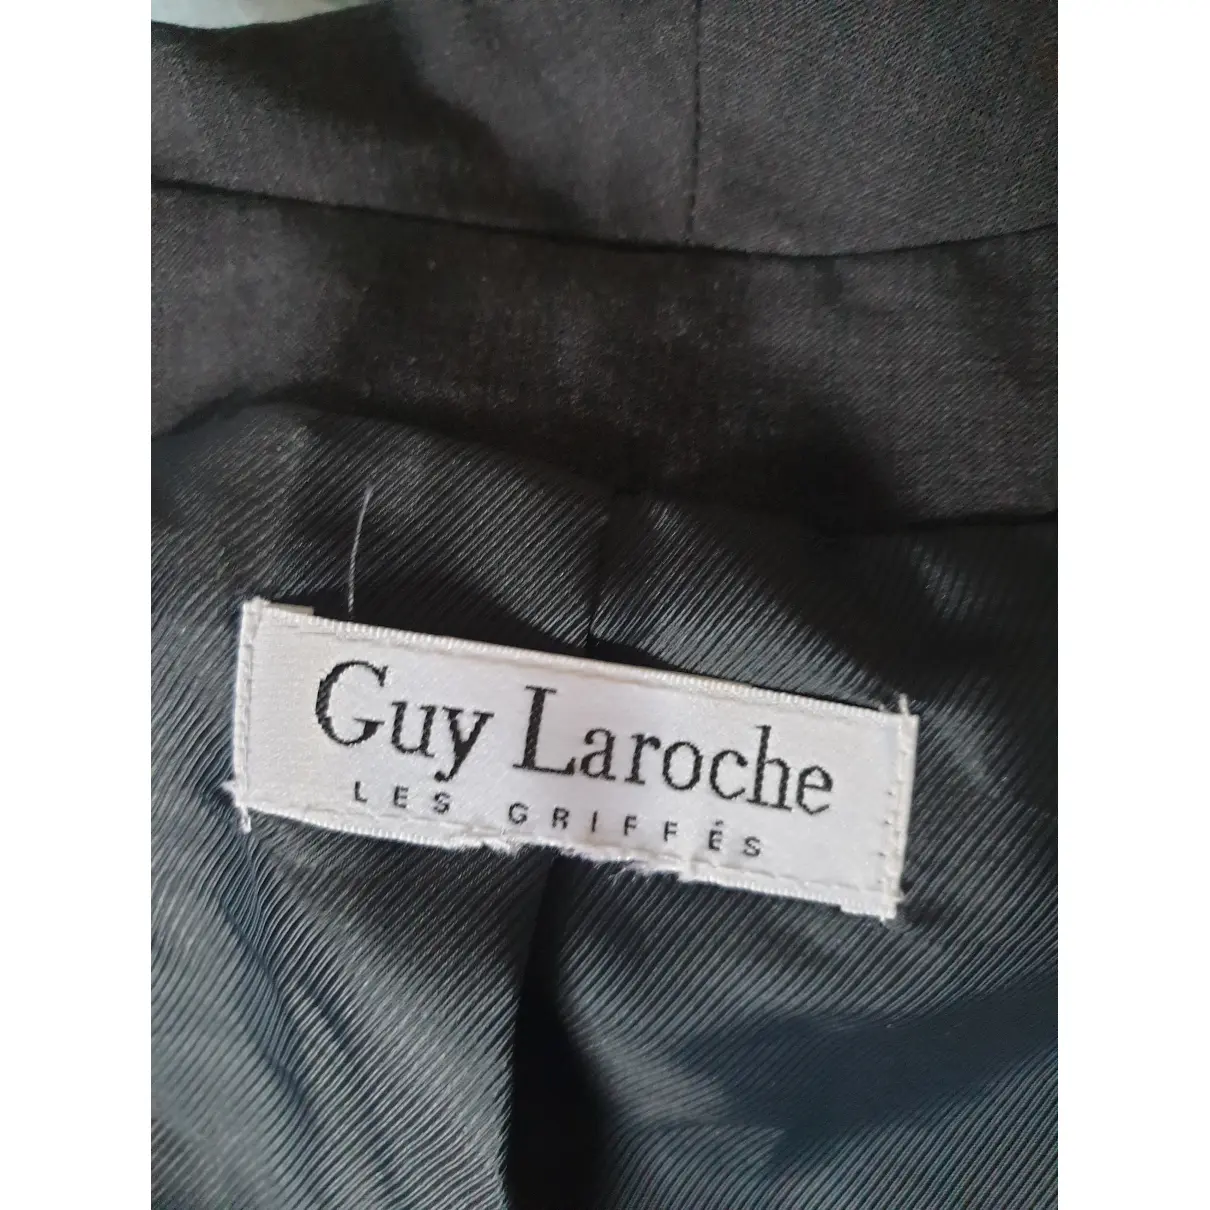 Luxury Guy Laroche Jackets Women - Vintage